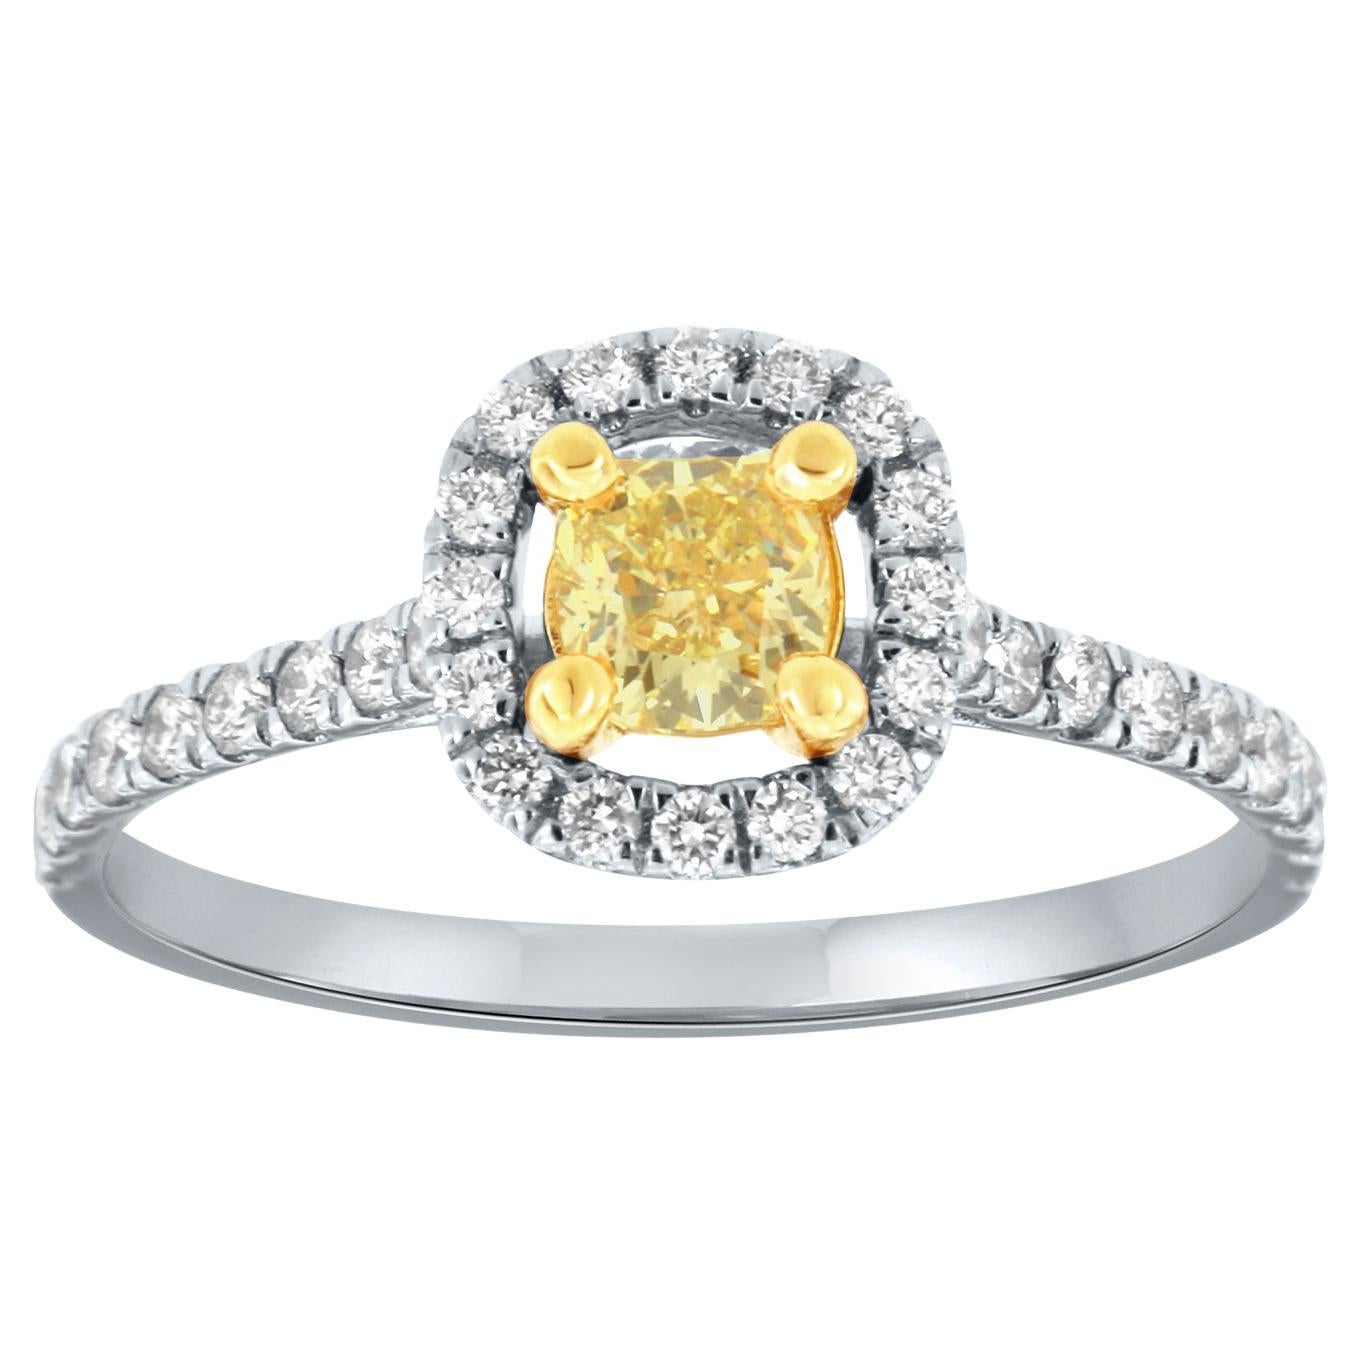 Bague bicolore 18 carats avec halo de diamants jaunes en forme de coussin de 0,35 carat